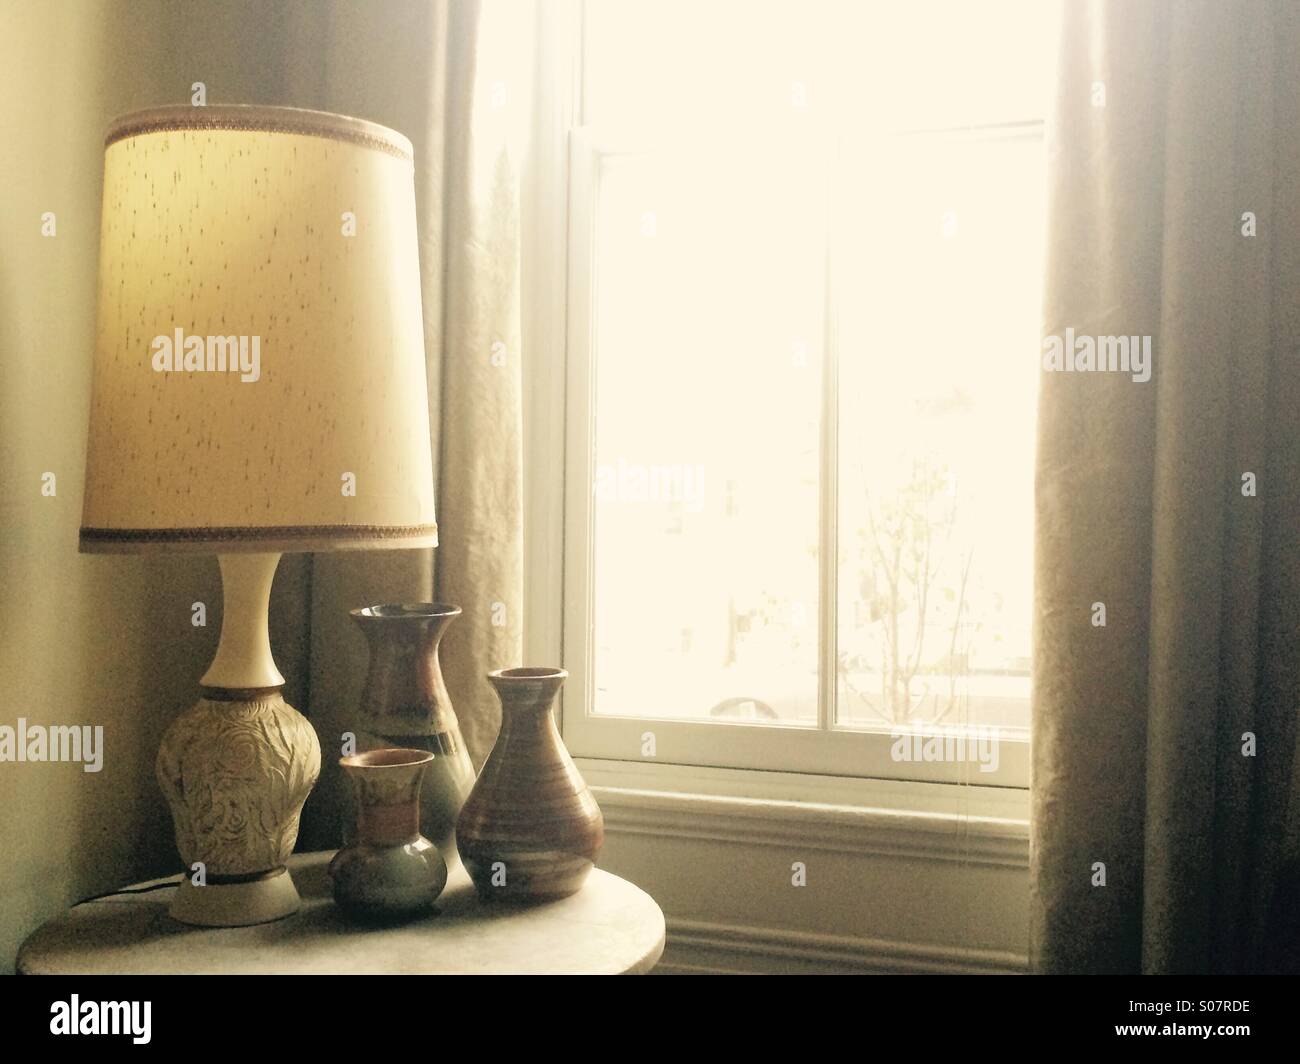 Lampen und Keramik-Kollektion in der Nähe von Fenster Stockfoto